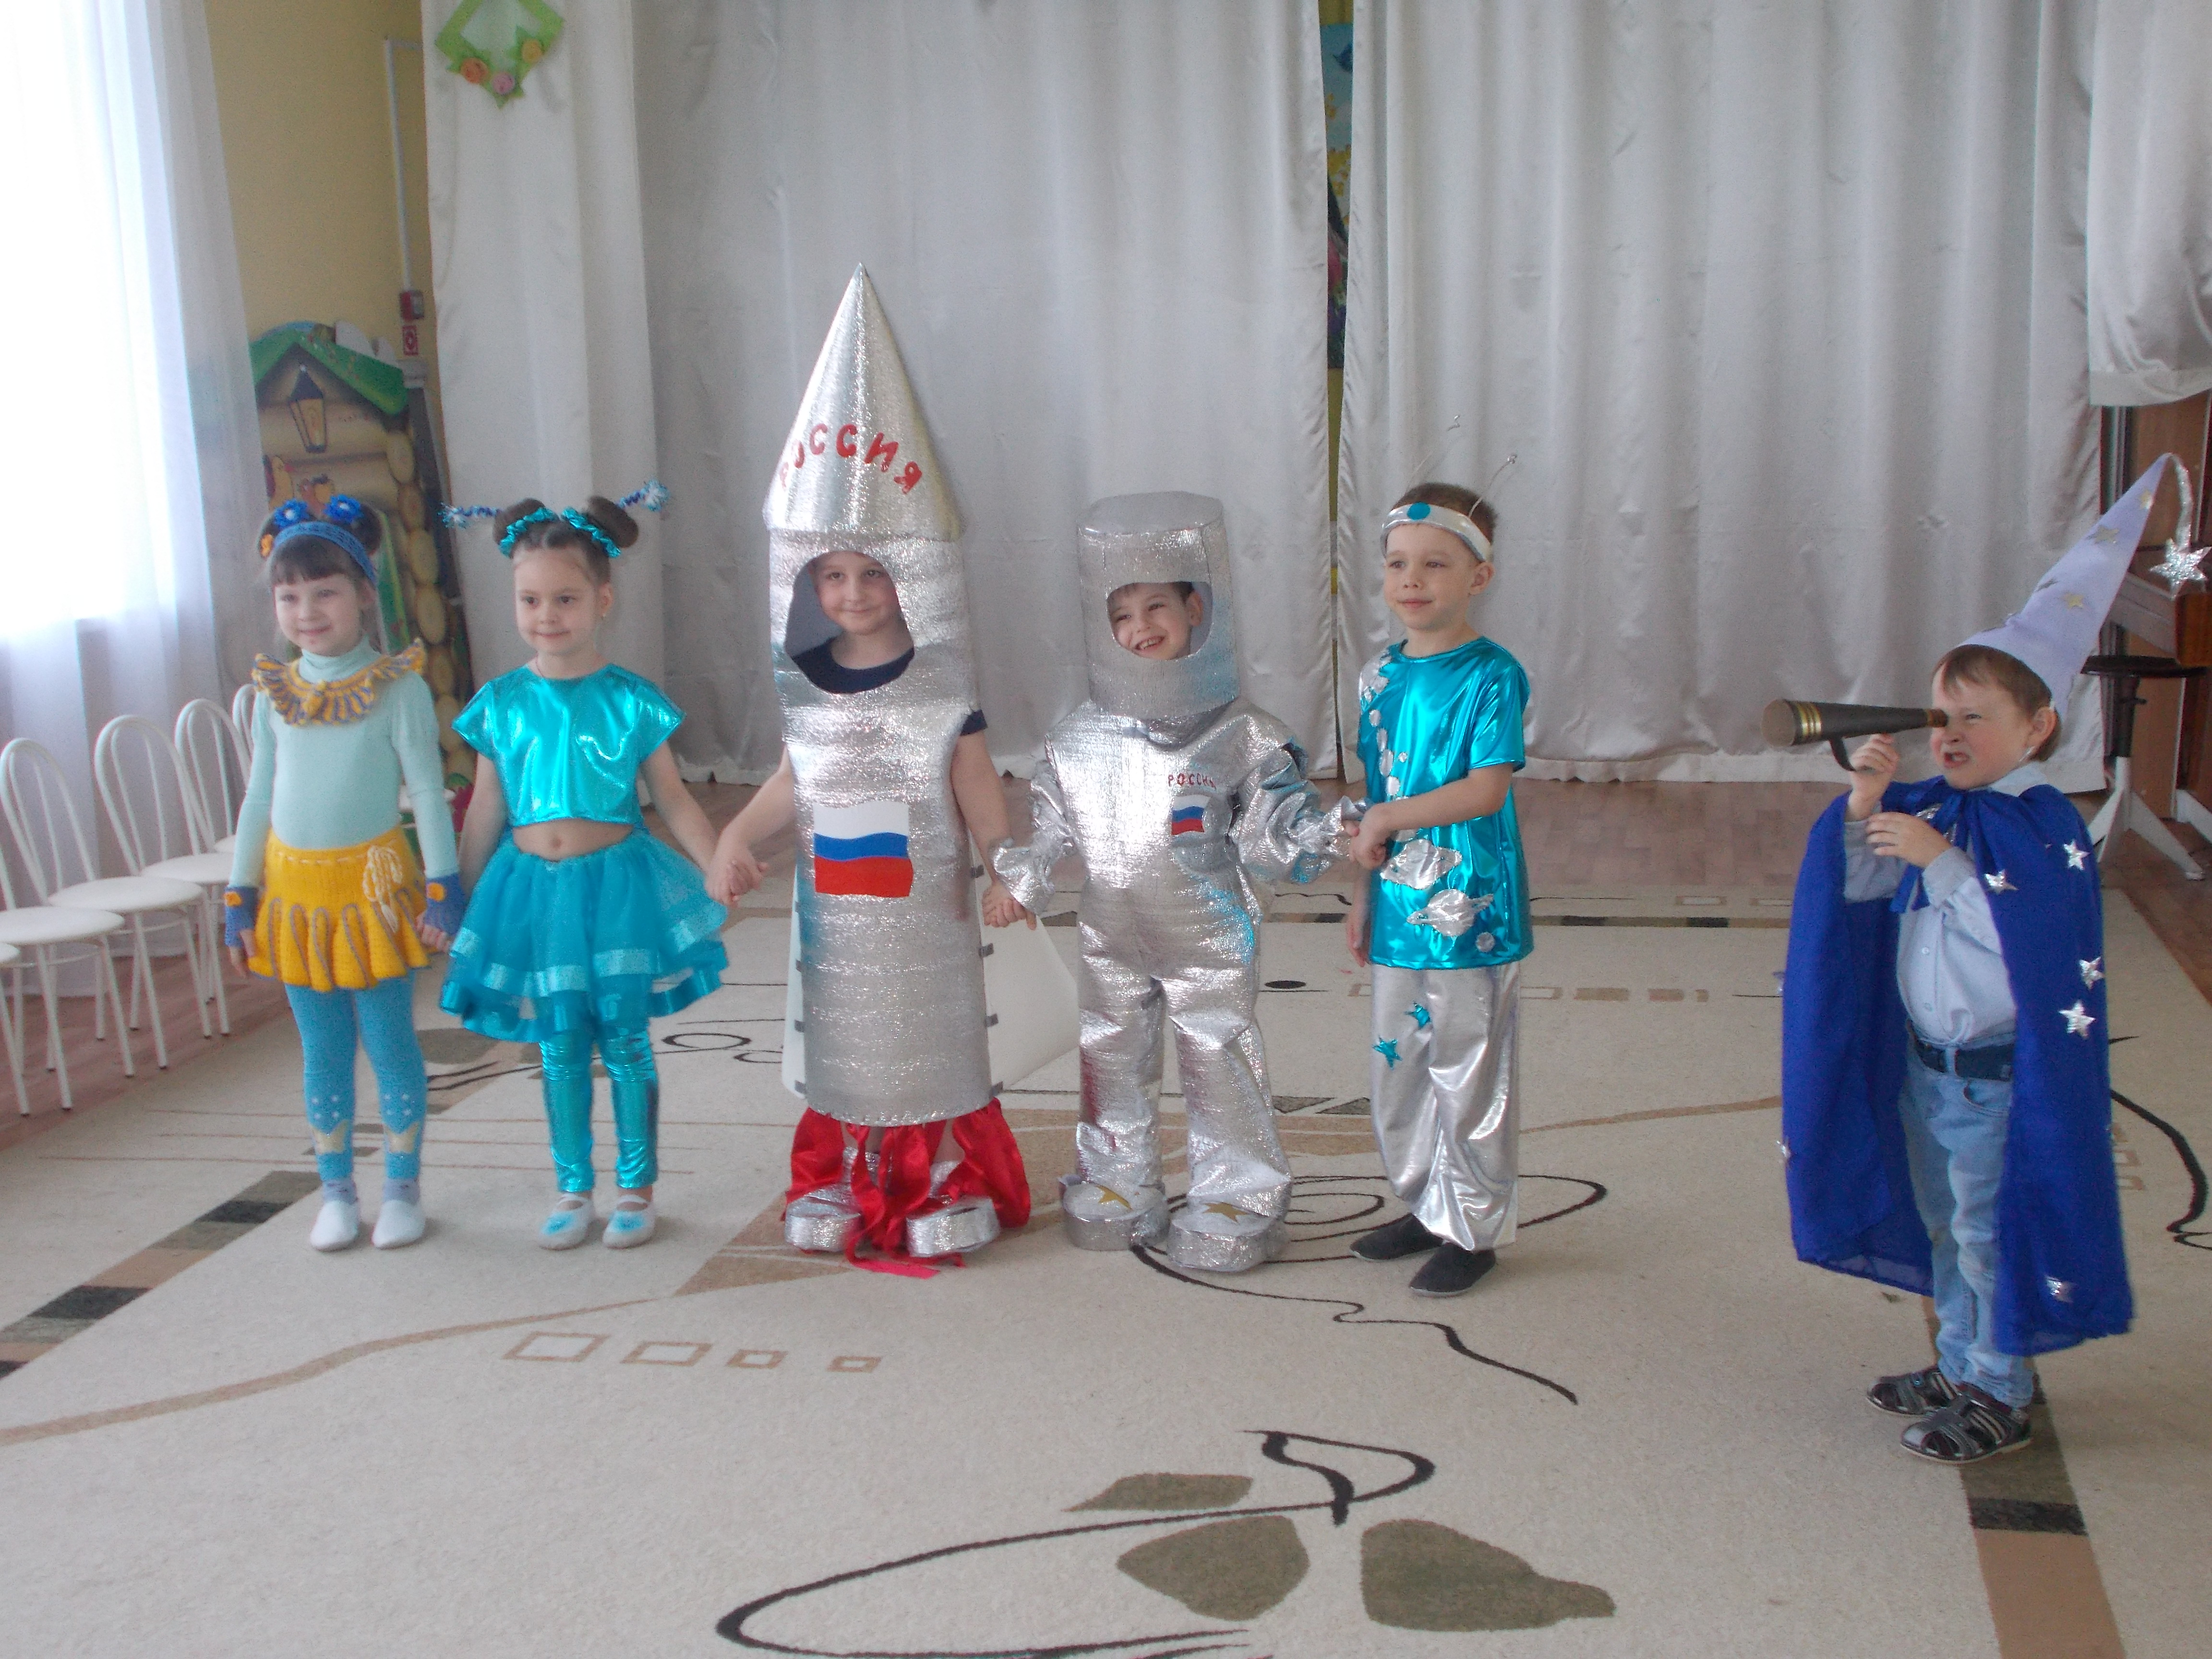 Костюм ко дню космонавтики в детский. Костюм ко Дню космонавтики в детский сад. Космические костюмы для детей. День космонавтики для детей в детском саду костюмы. Конкурс космических костюмов в детском саду.